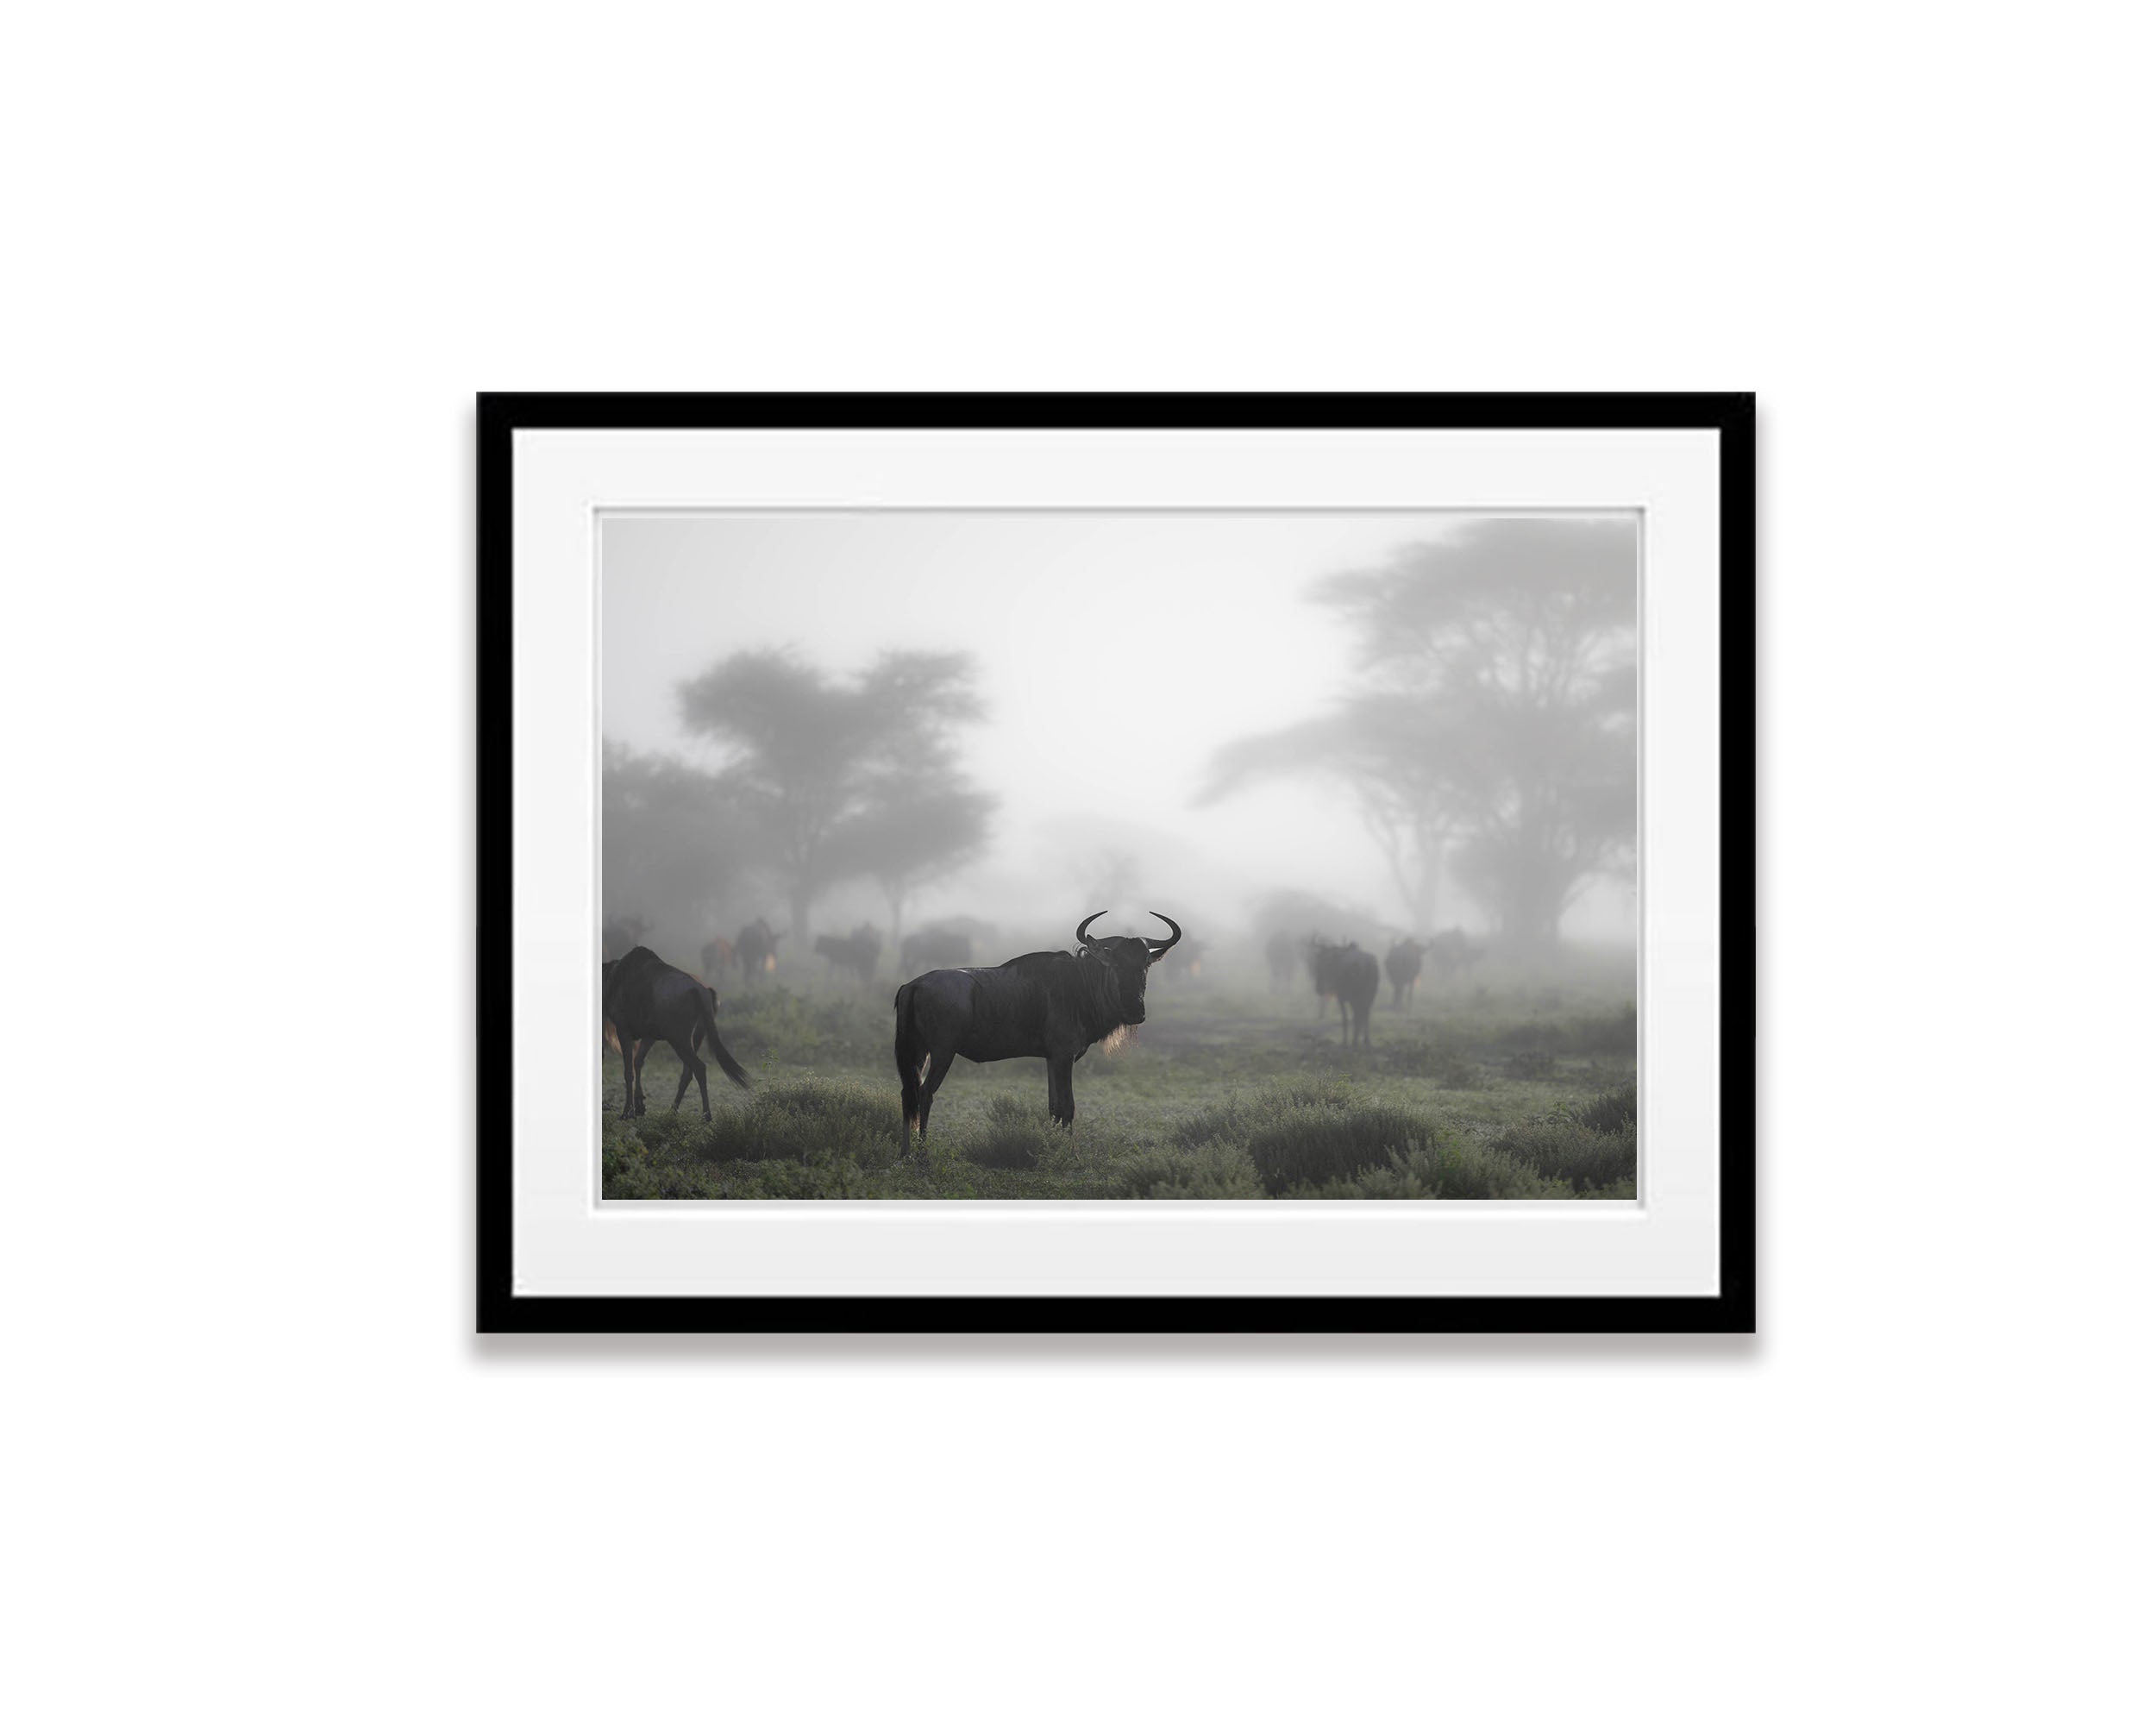 Wildebeest in the mist, Tanzania